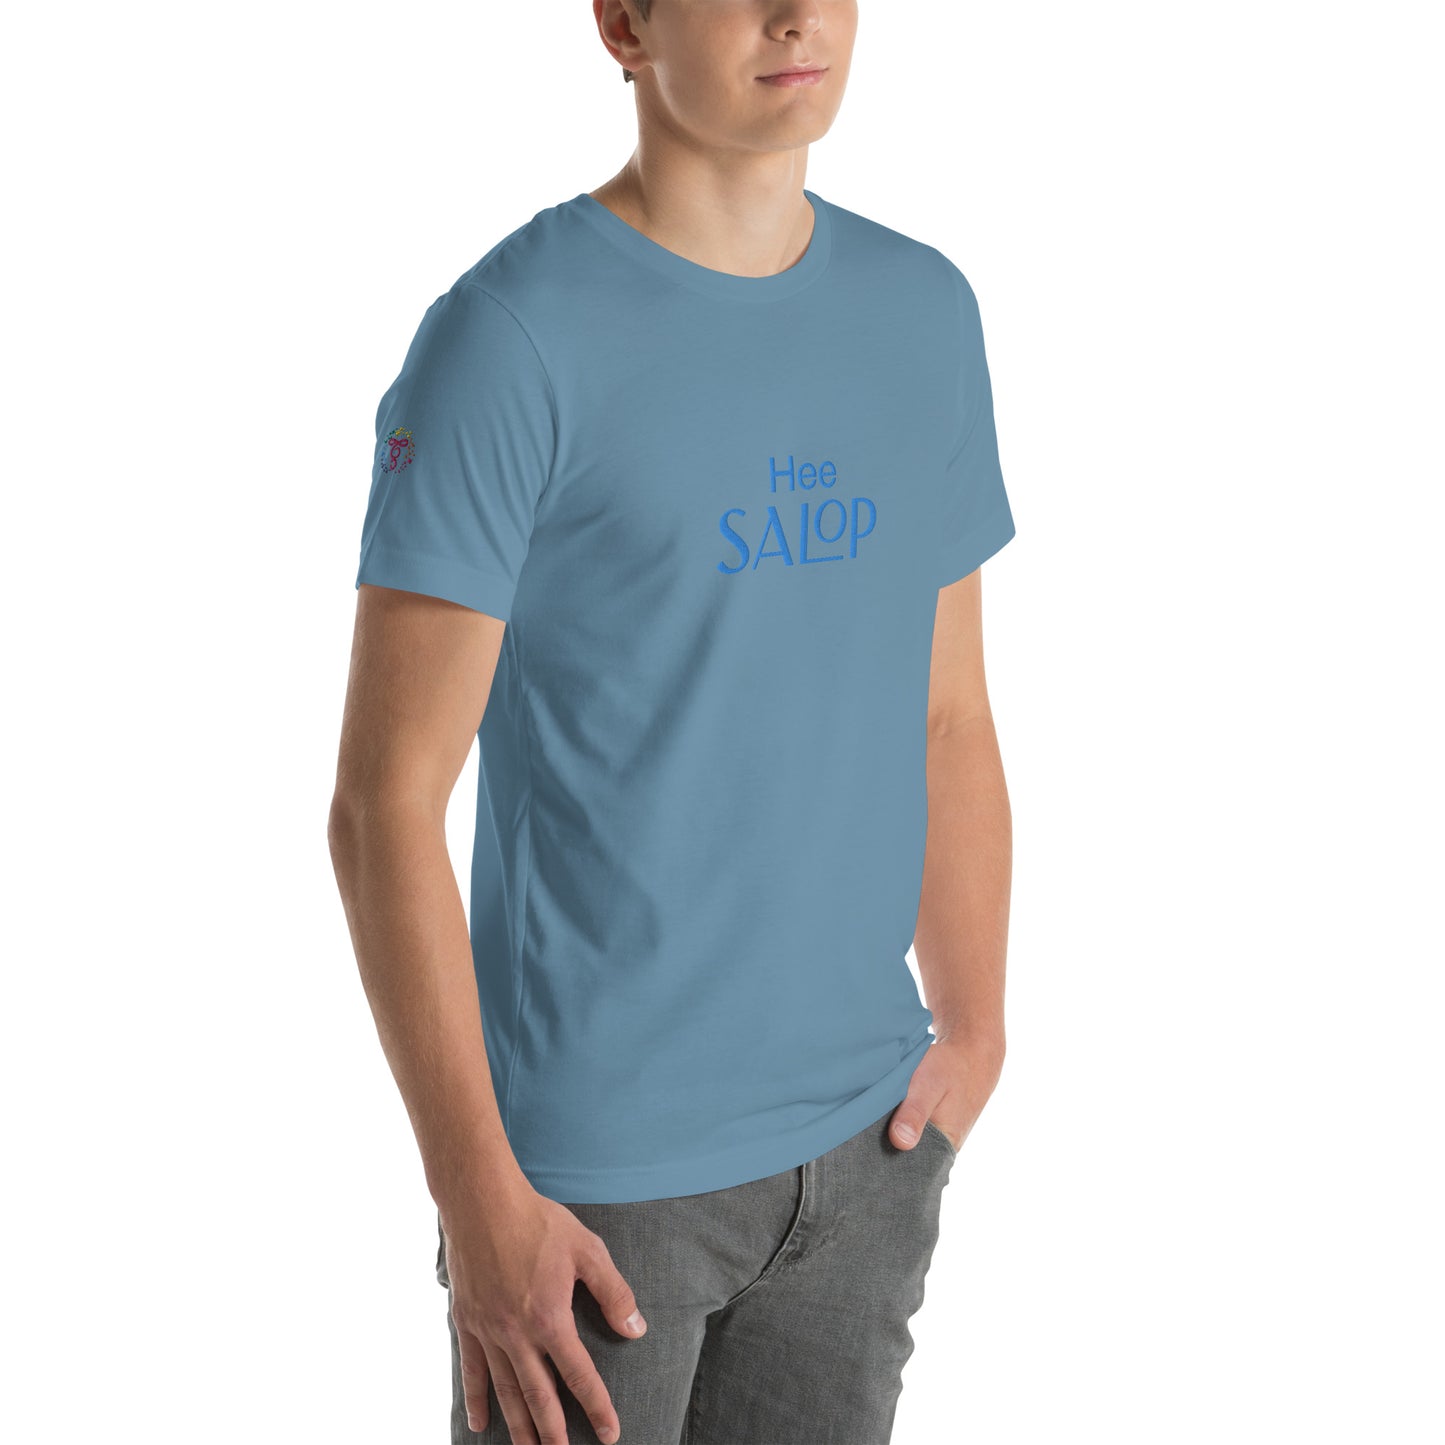 Hee Salop! Unisex t-shirt